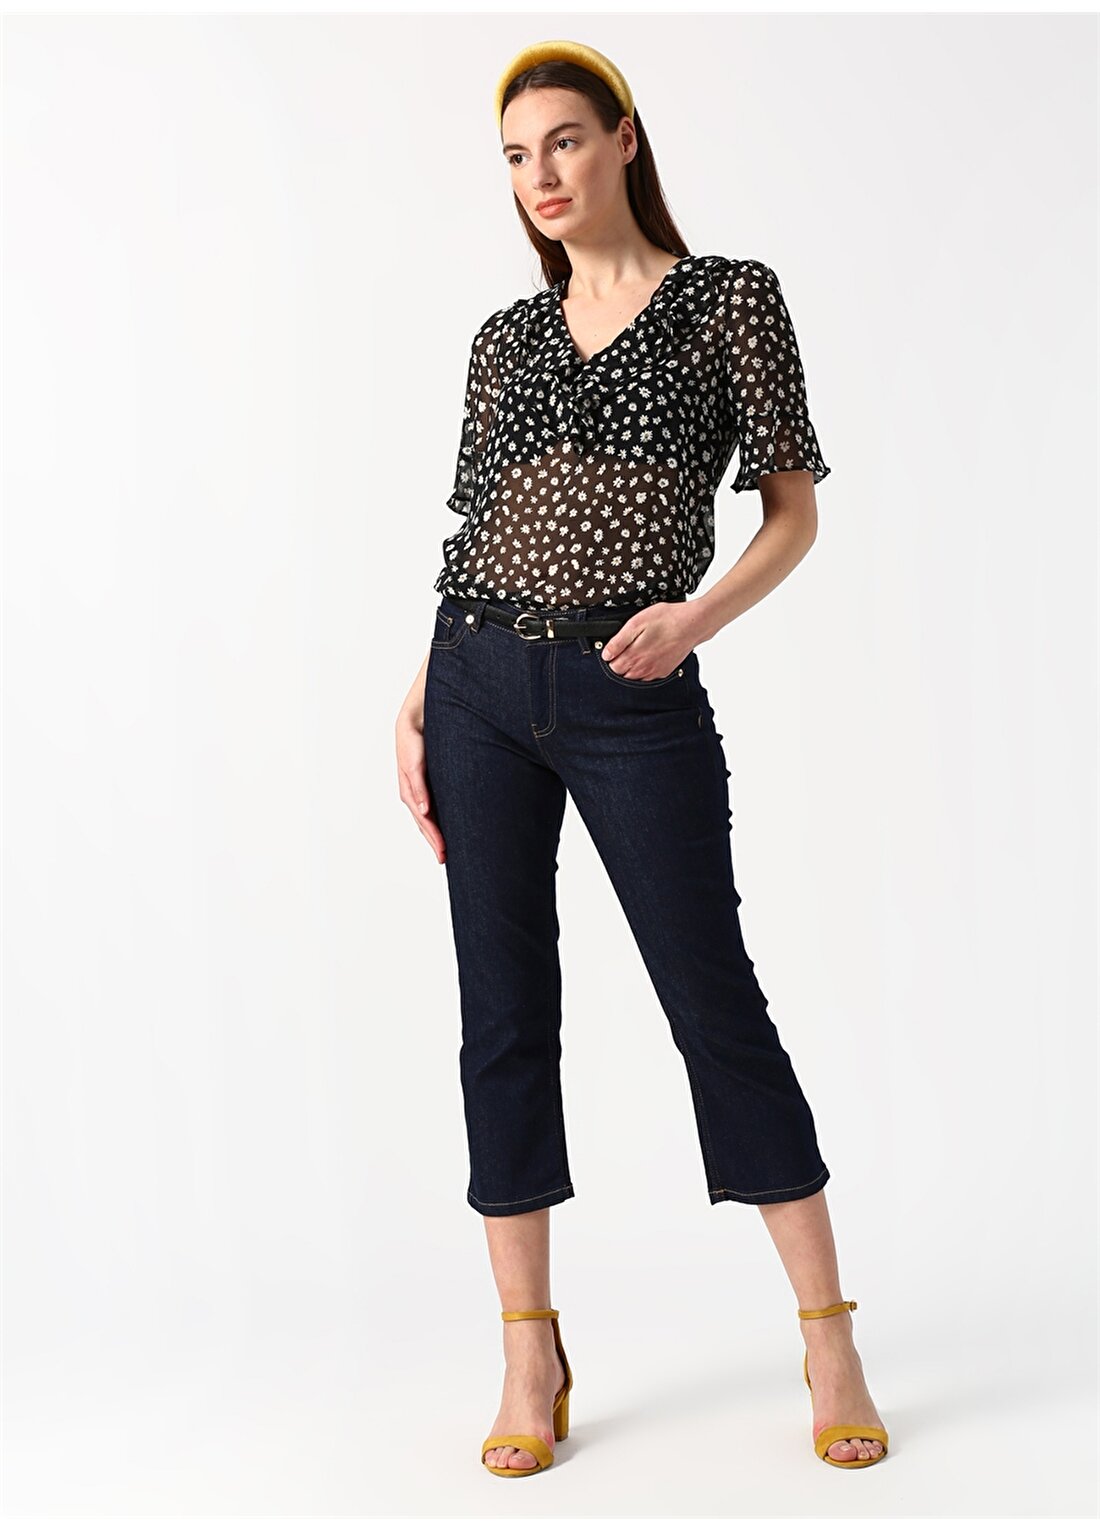 Beymen Studio 101360892 Siyah Kadın Çicek Desenli Bluz